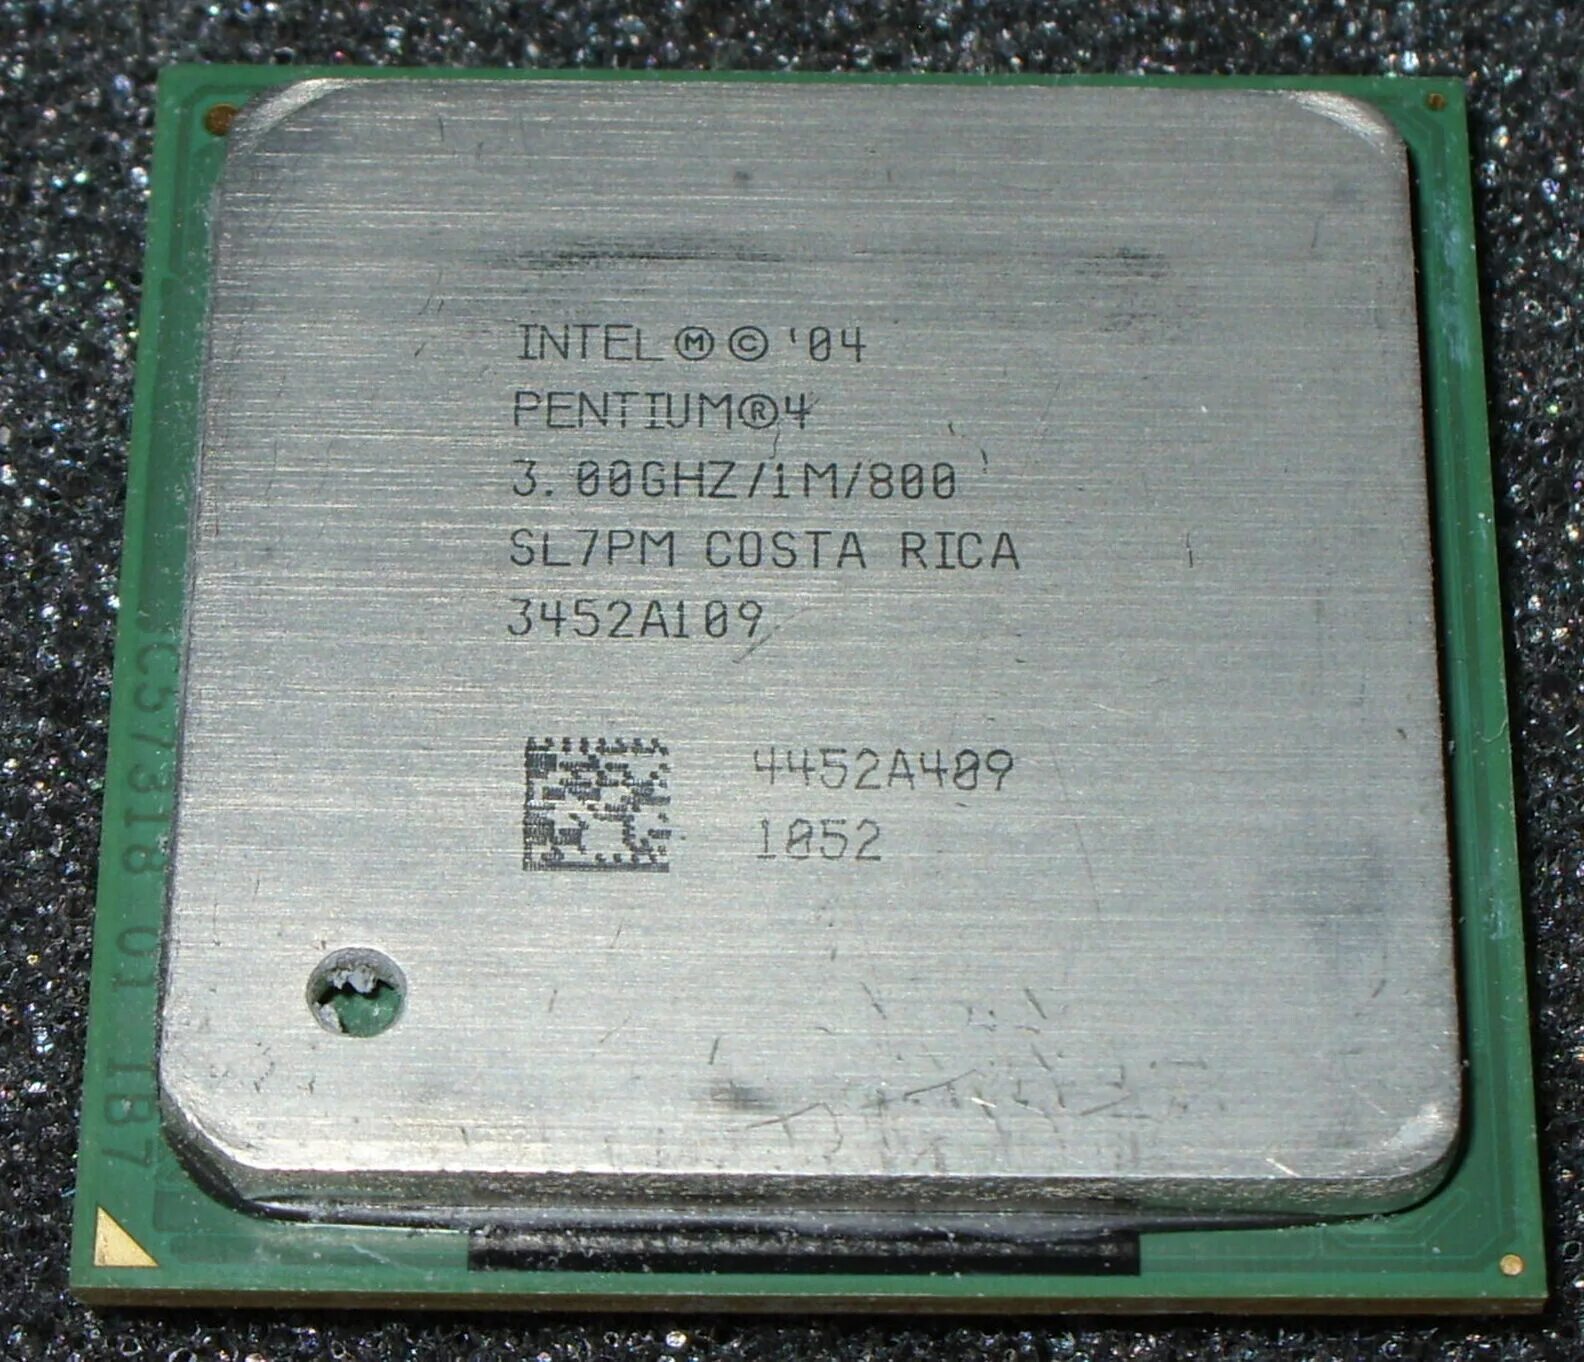 Pentium 4 3.00GHZ 478. Intel Pentium 4 2.0 GHZ. Pentium 4 сокет 478. Intel Pentium 4 CPU 3.00GHZ. Pentium 4 3.00